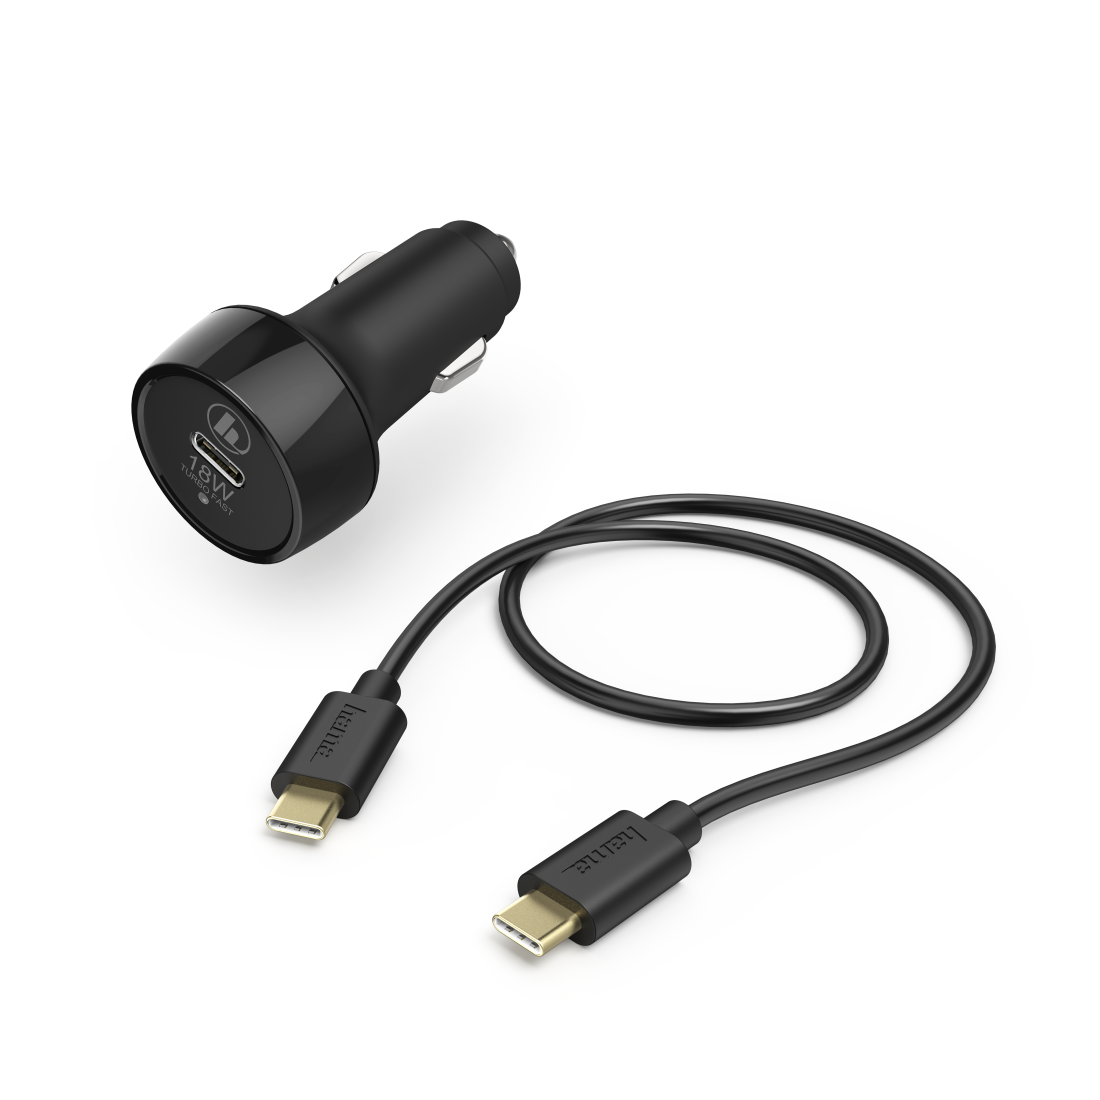 Kfz-Ladeset, USB-C, PD/Qualcomm®, 18W, USB-C-Kabel, 1,5 m, Schwarz | Hama